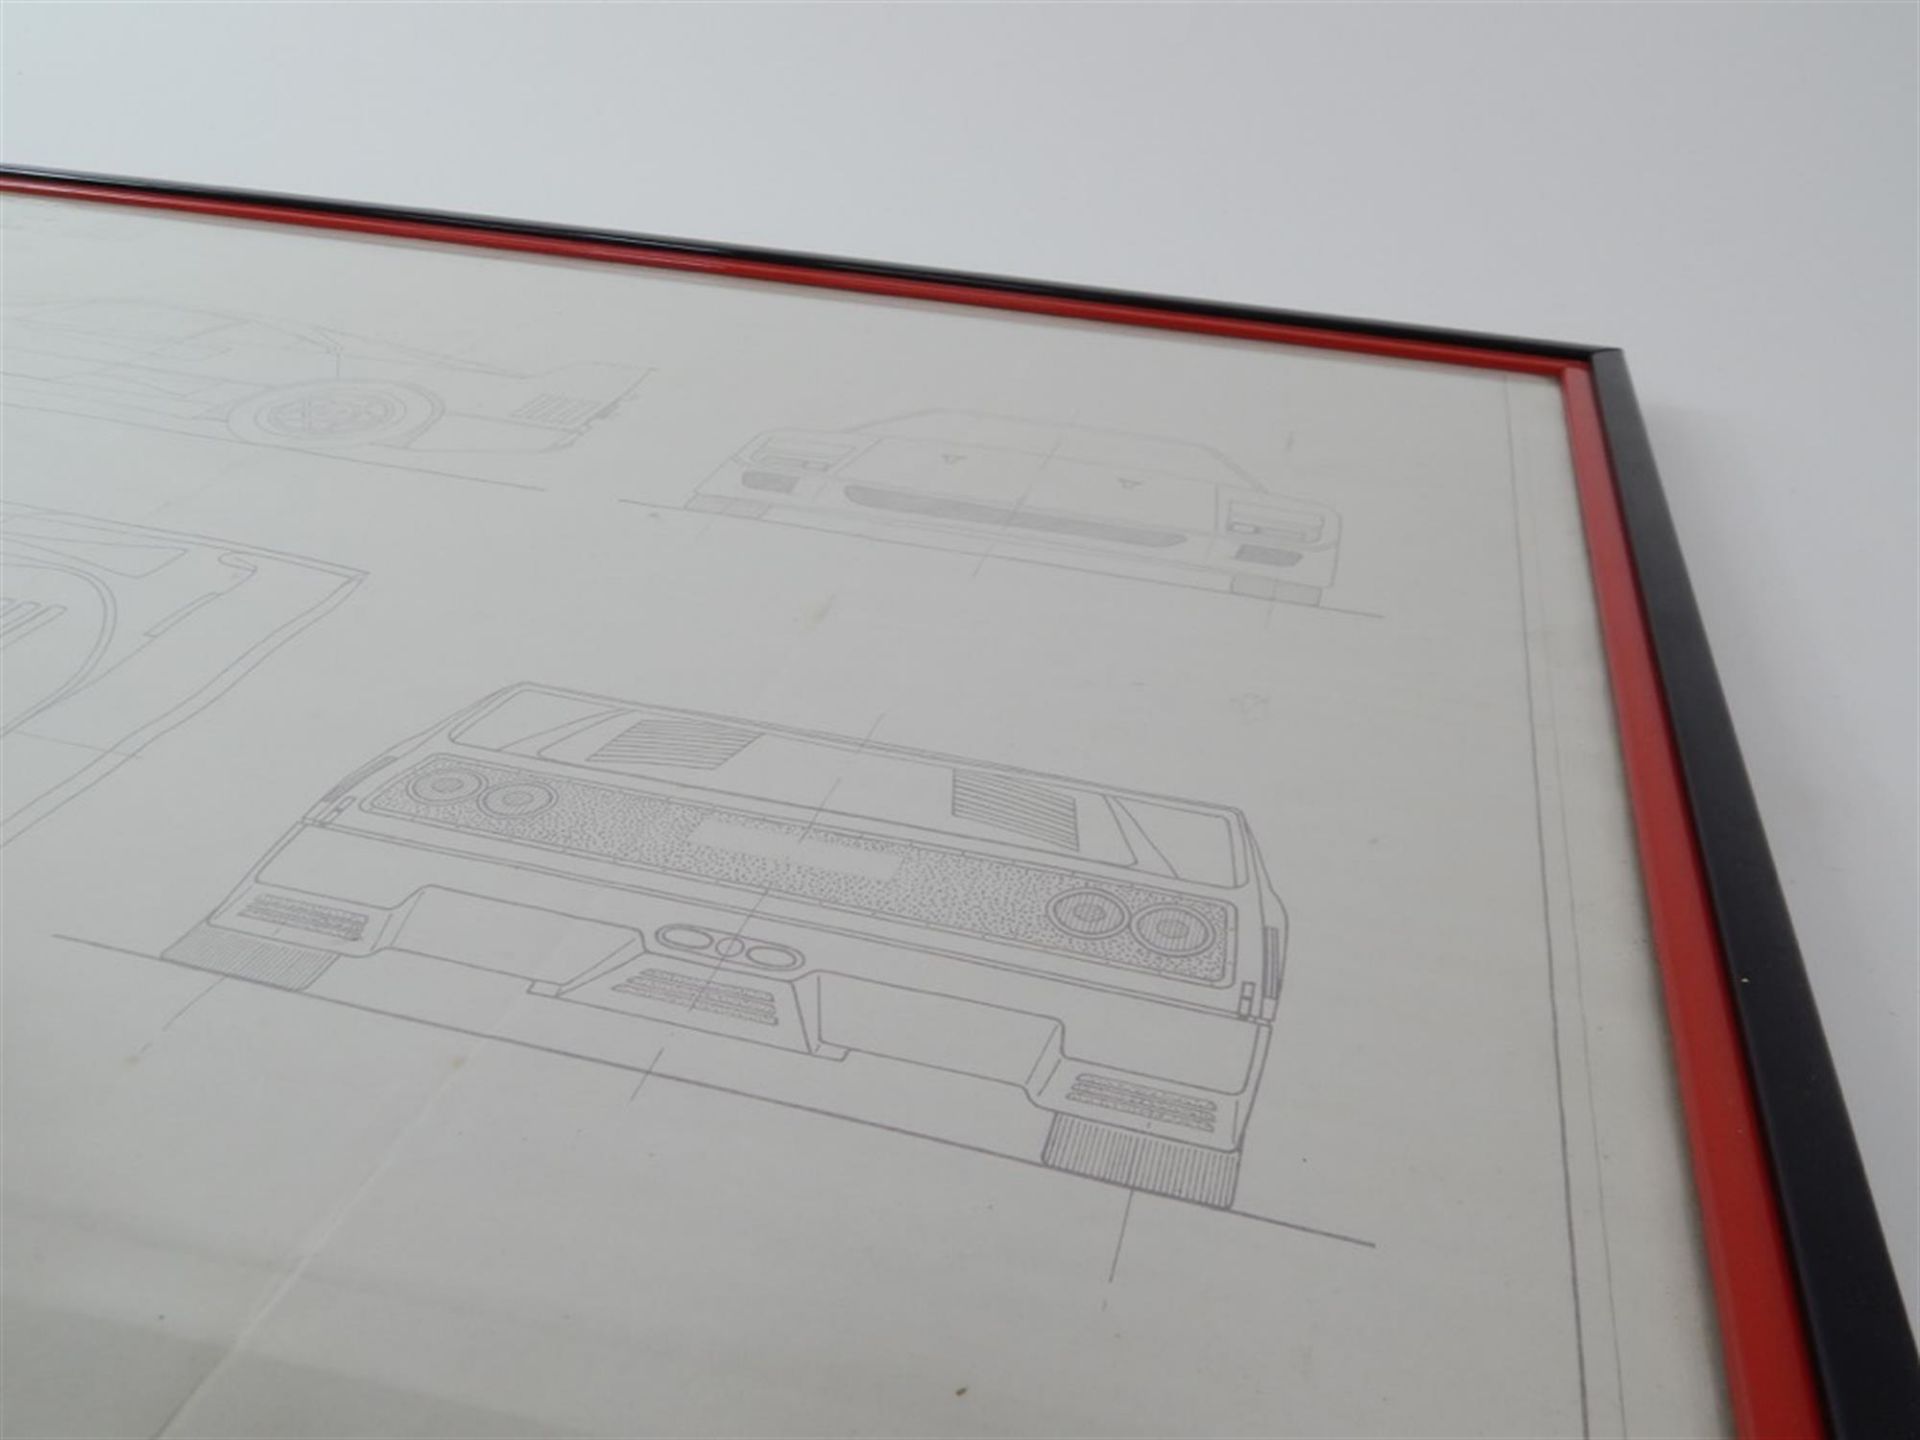 1987 - 1992 Ferrari F40 Factory Blueprint Framed - Image 6 of 10